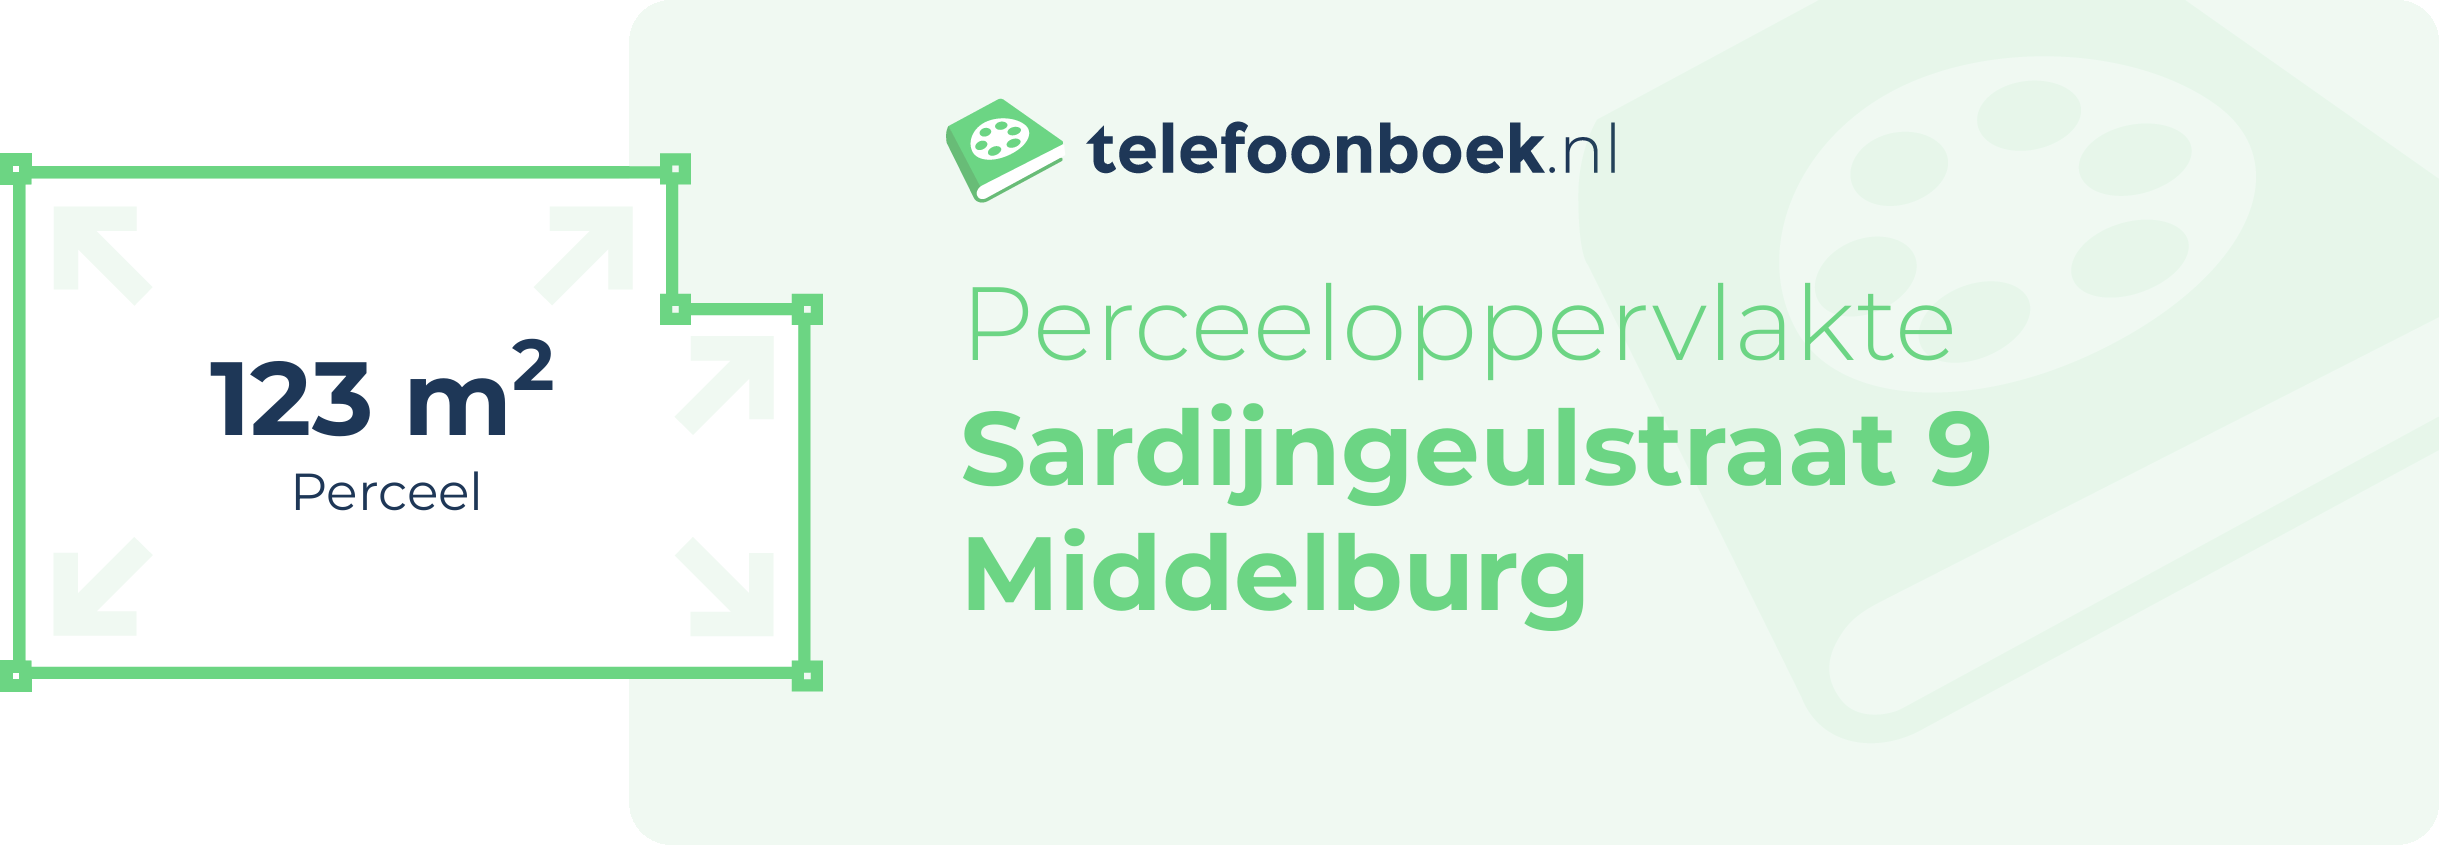 Perceeloppervlakte Sardijngeulstraat 9 Middelburg